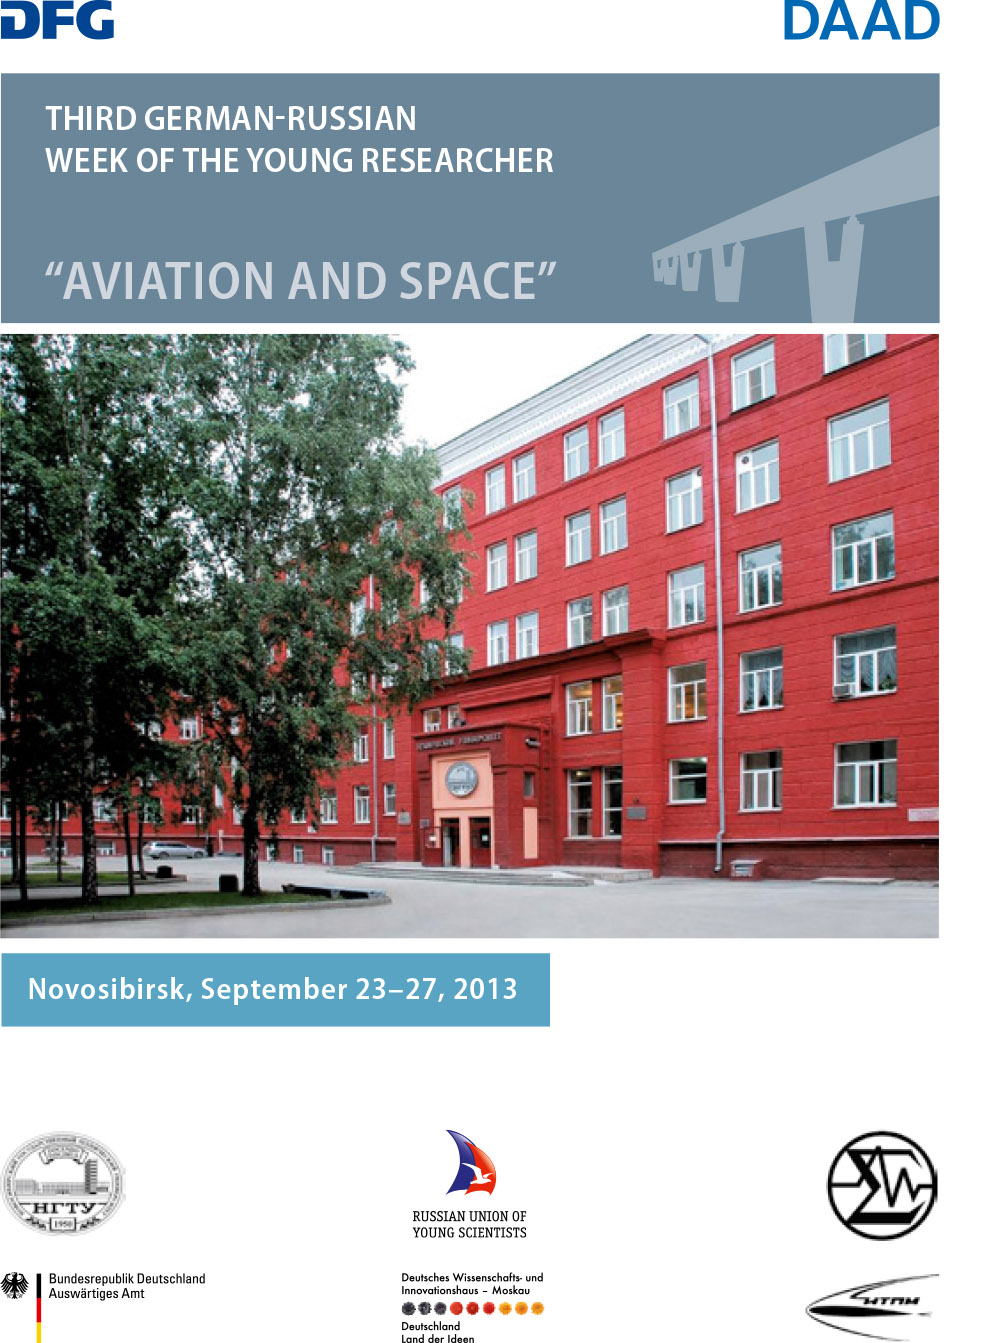 Broschüre zur Novosibirsker Nachwuchswoche „Aviation and Space“